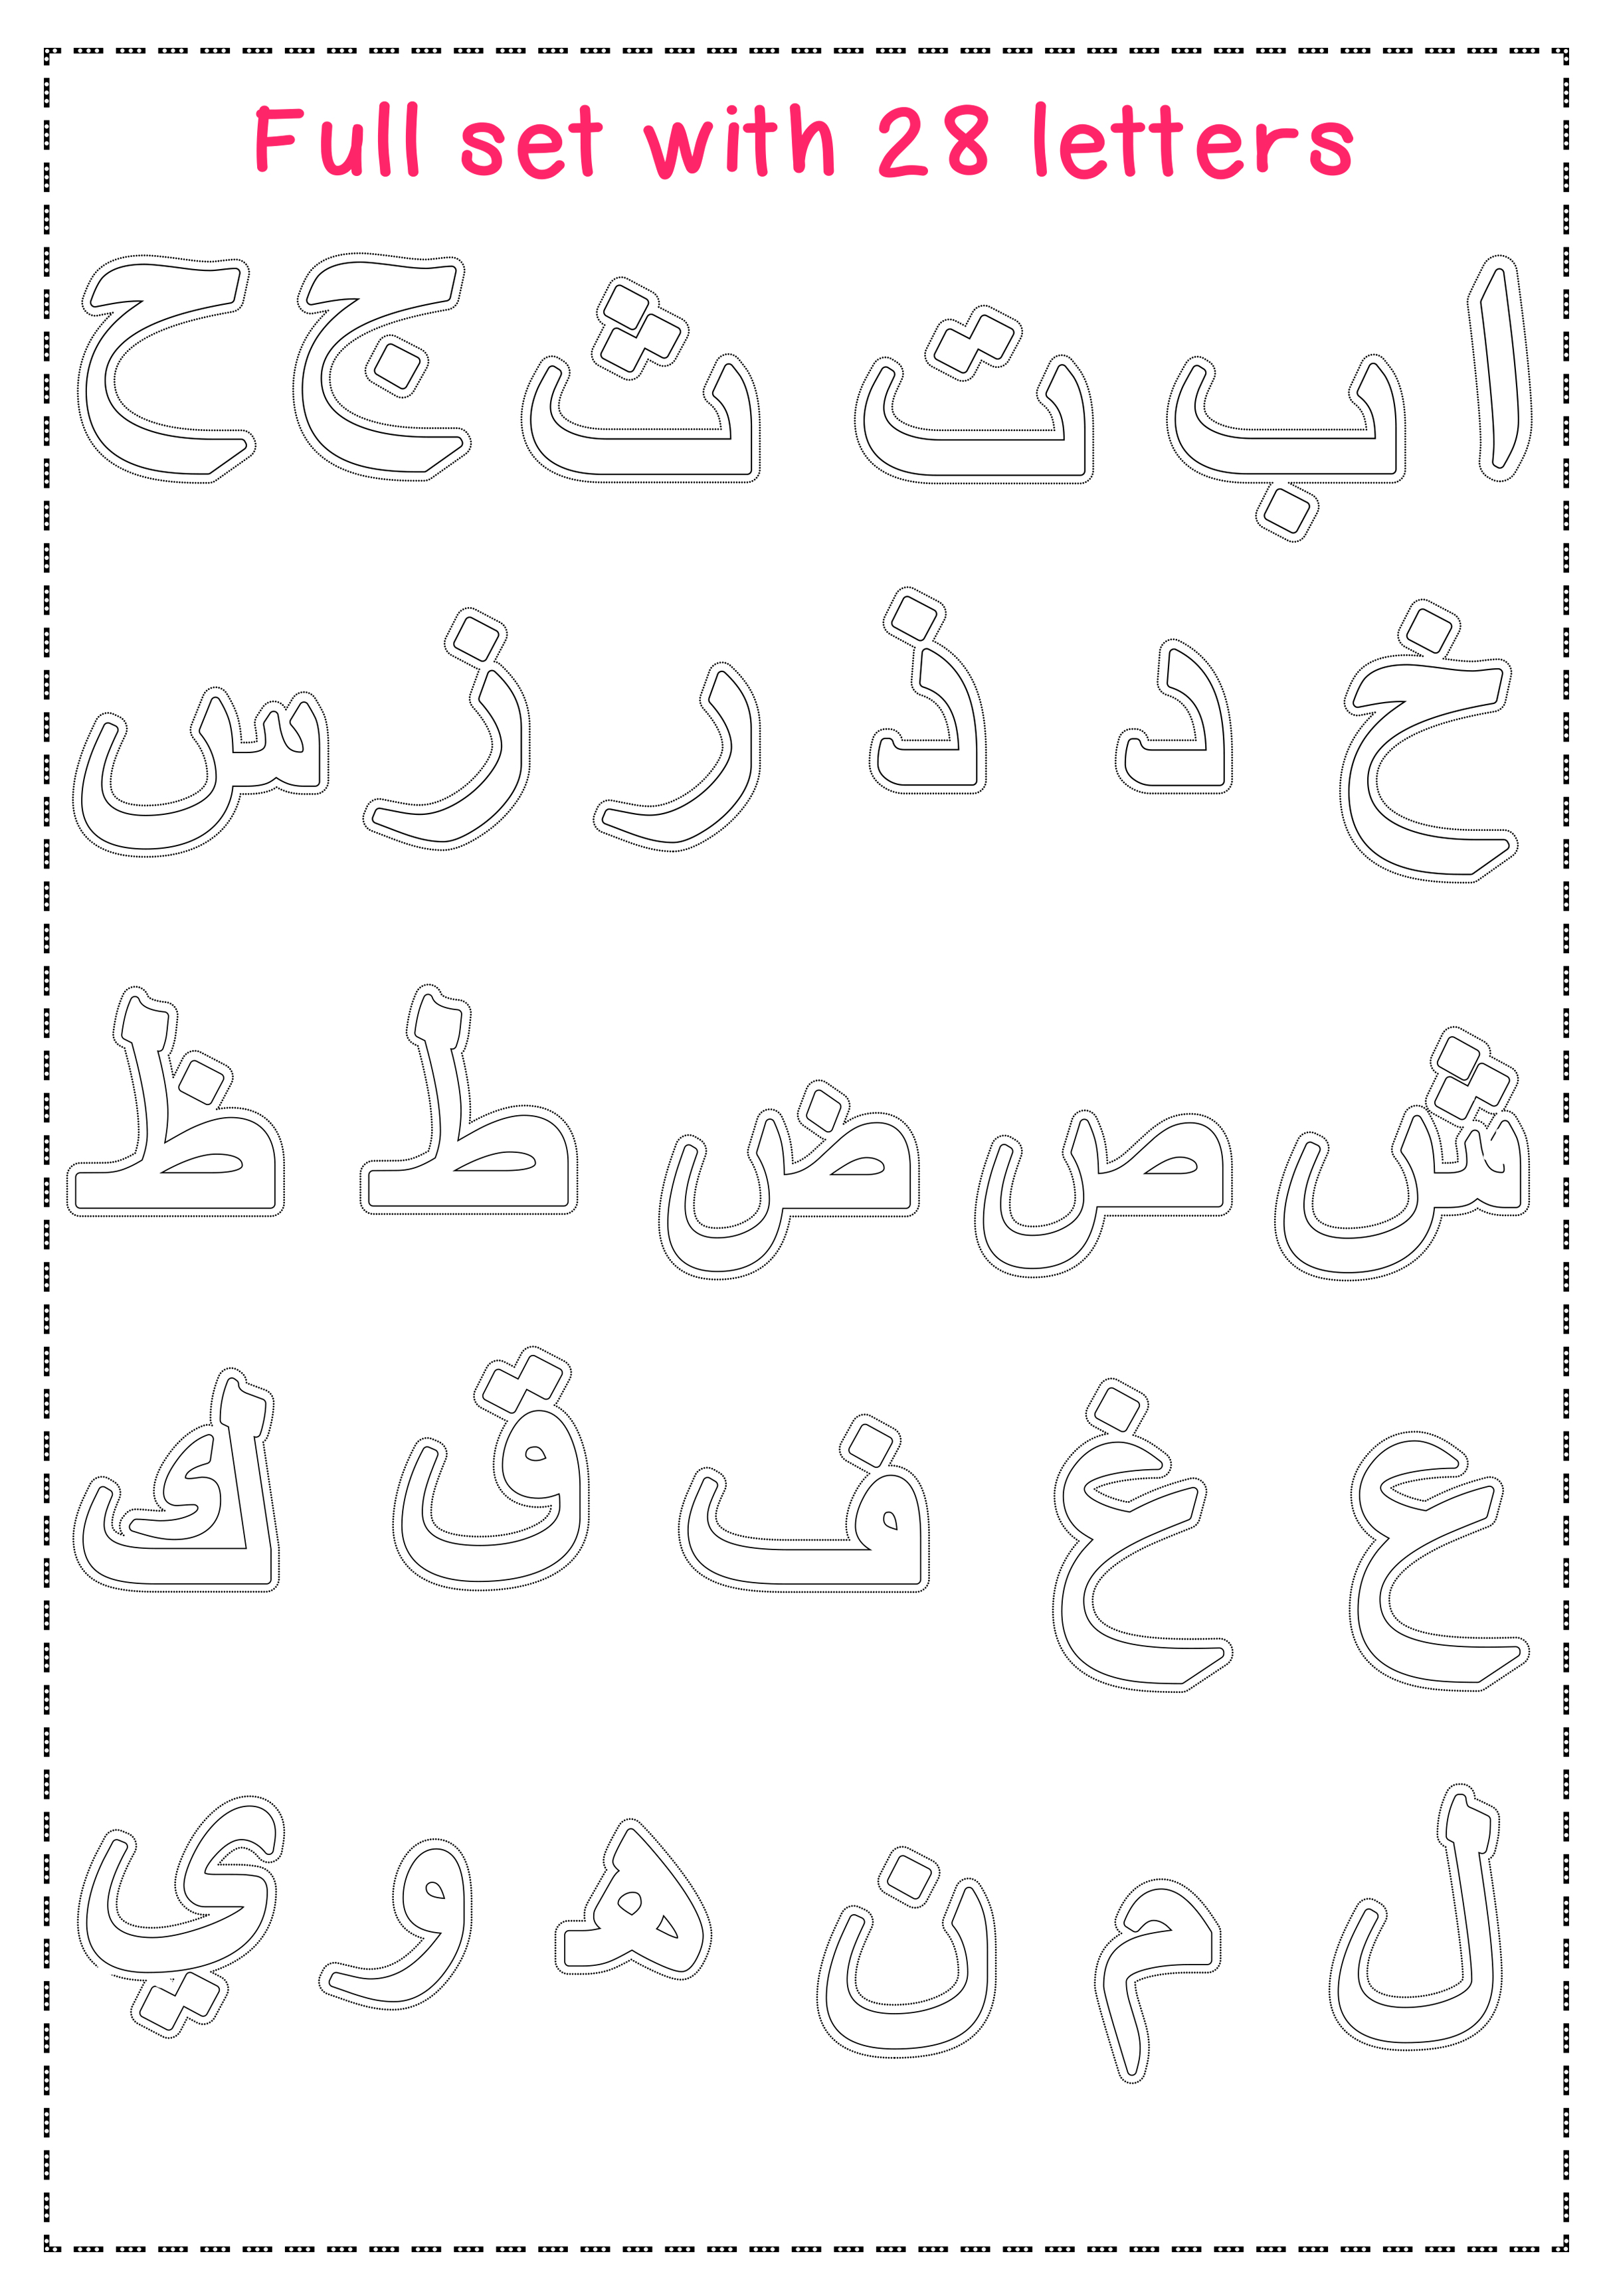 Clip art Arabic alphabet letters colouring, cut, paste